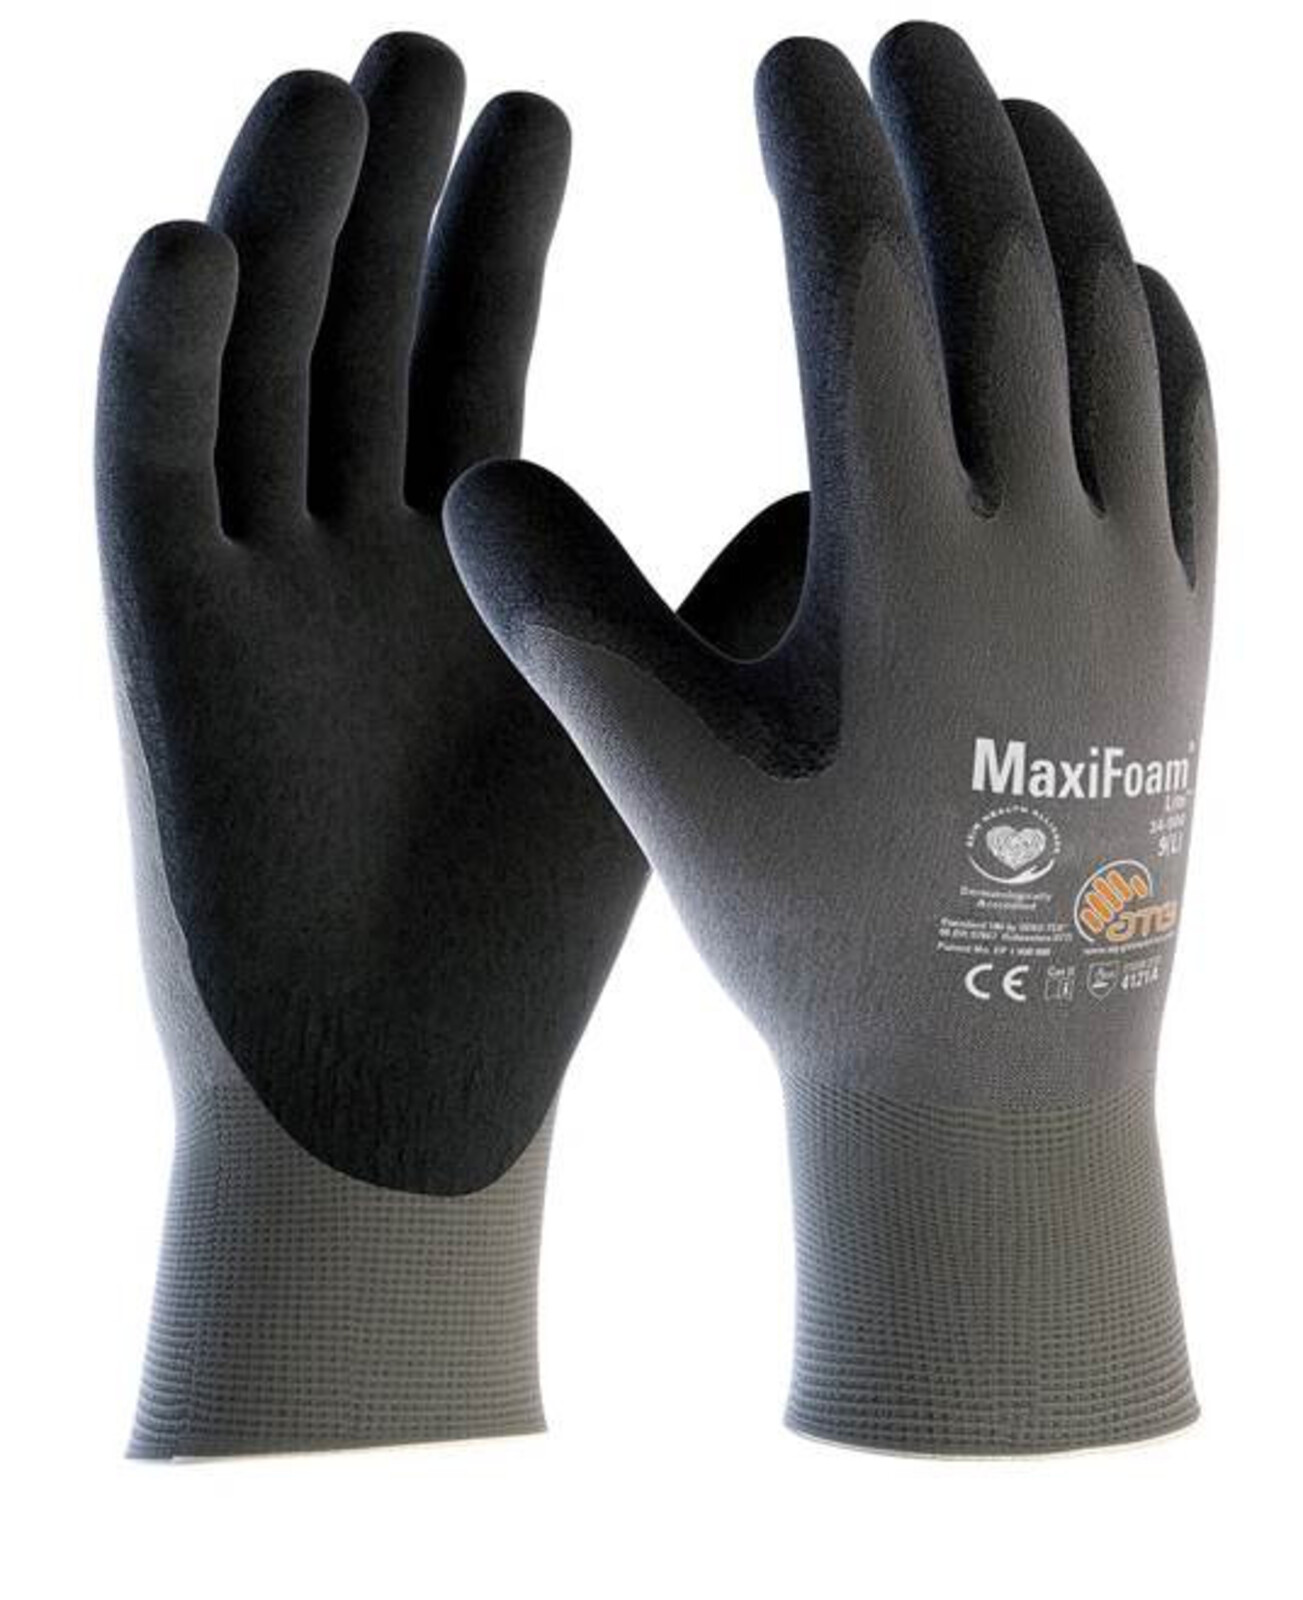 Pracovné rukavice ATG MaxiFoam LITE 34-900 (12 párov) - veľkosť: 5/XXS, farba: sivá